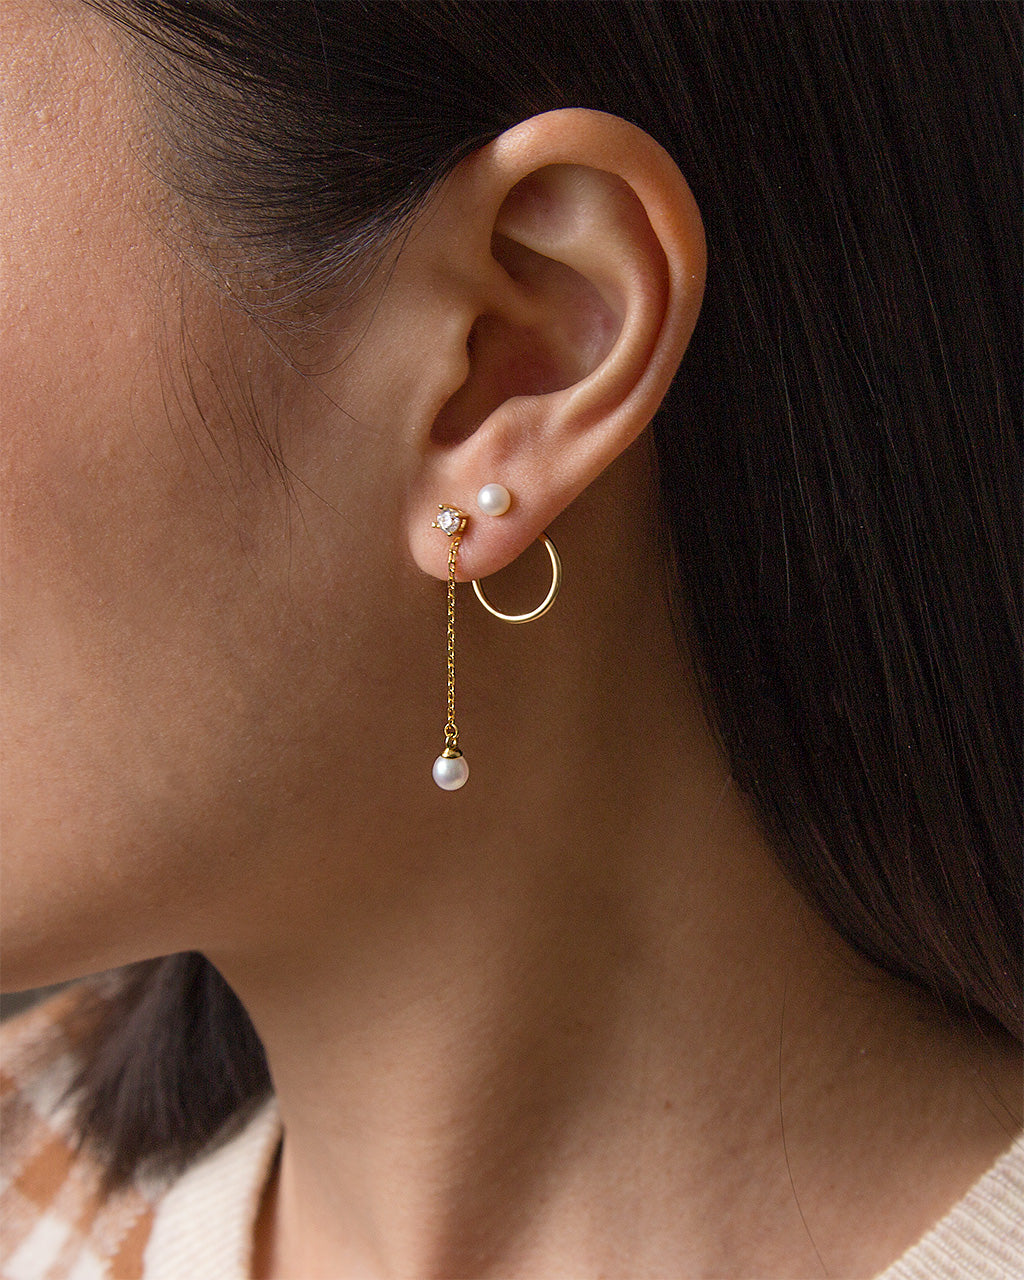 Amazon.com: Earrings, lEIsr00y 1Pc Glitter Star Rhinestone Tassel Chain  Dangle Ear Jacket Earring Women Jewelry - Golden Delicate Set : Clothing,  Shoes & Jewelry